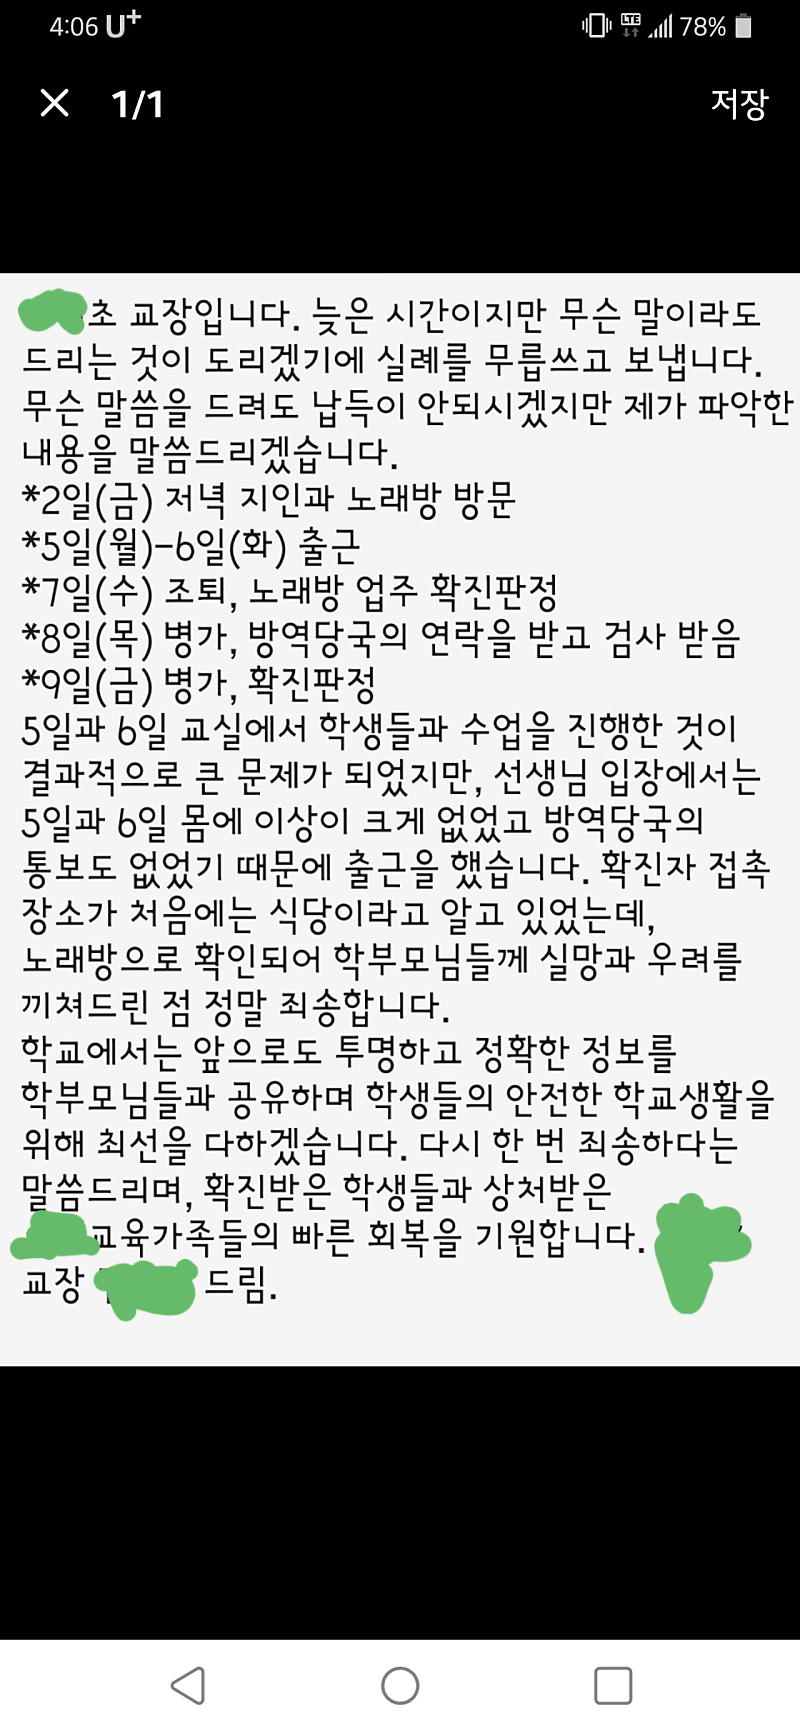 분당 노래방 도우미 터진 초등학교 교사 반전.jpg